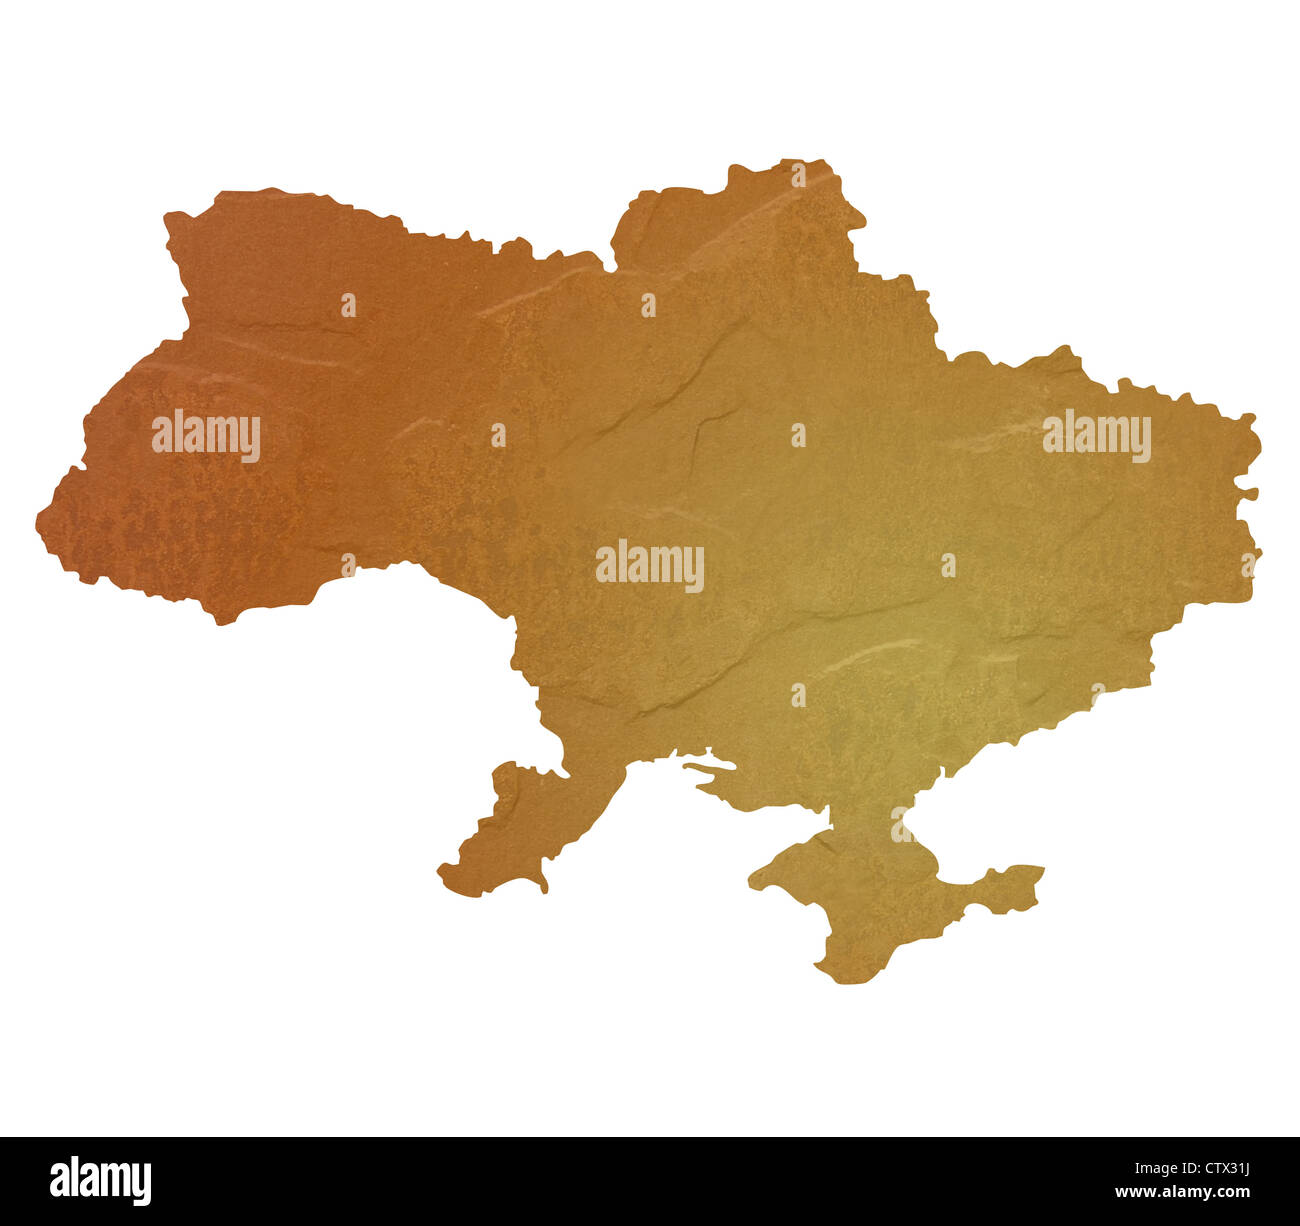 Mappa testurizzata di Ucraina mappa marrone con sasso o pietra texture, isolato su sfondo bianco con percorso di clipping. Foto Stock